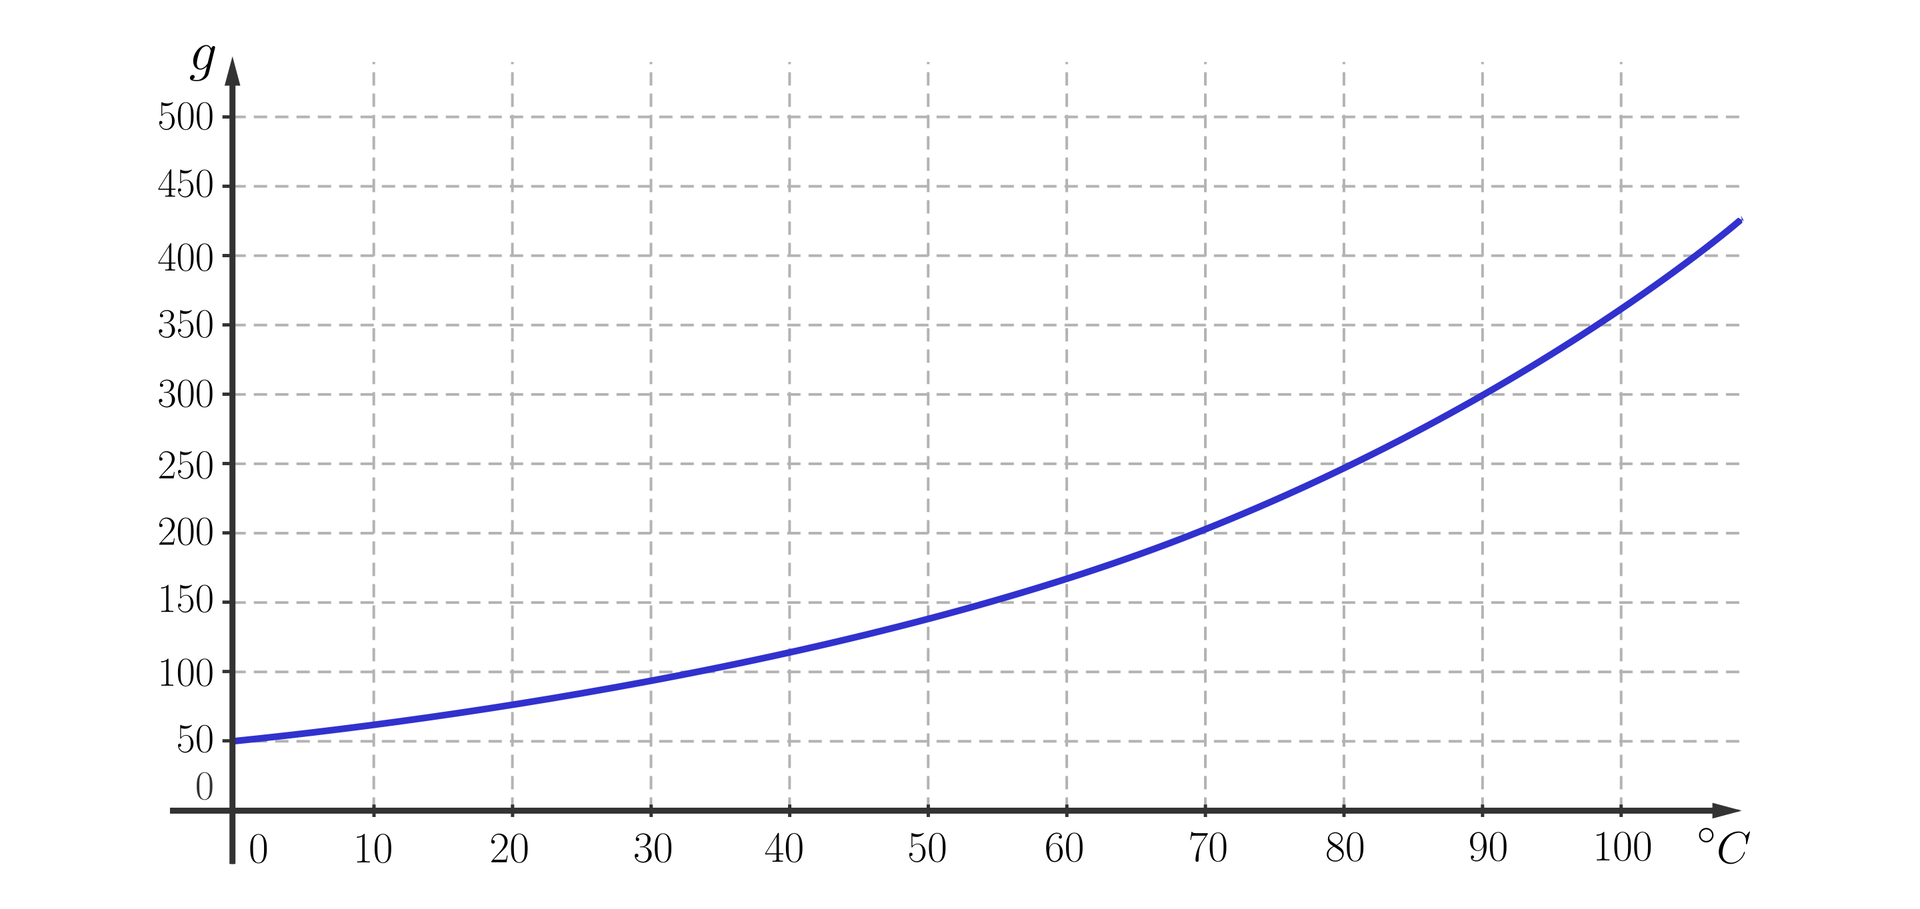 Ilustracja przedstawia układ współrzędnych z poziomą osią od zera do stu stopni Celsjusza z podziałką co dziesięć i pionową osią g od zera do 500 z podziałką co pięćdziesiąt. W układzie zaznaczono wykres, który rozpoczyna się w punkcie nawias zero średnik pięćdziesiąt i biegnie po łuku przez punkty: nawias siedemdziesiąt średnik dwieście zamknięcie nawiasu, nawias osiemdziesiąt średnik dwieście pięćdziesiąt, nawias dziewięćdziesiąt średnik trzysta zamknięcie nawiasu i wychodzi poza płaszczyznę układu.